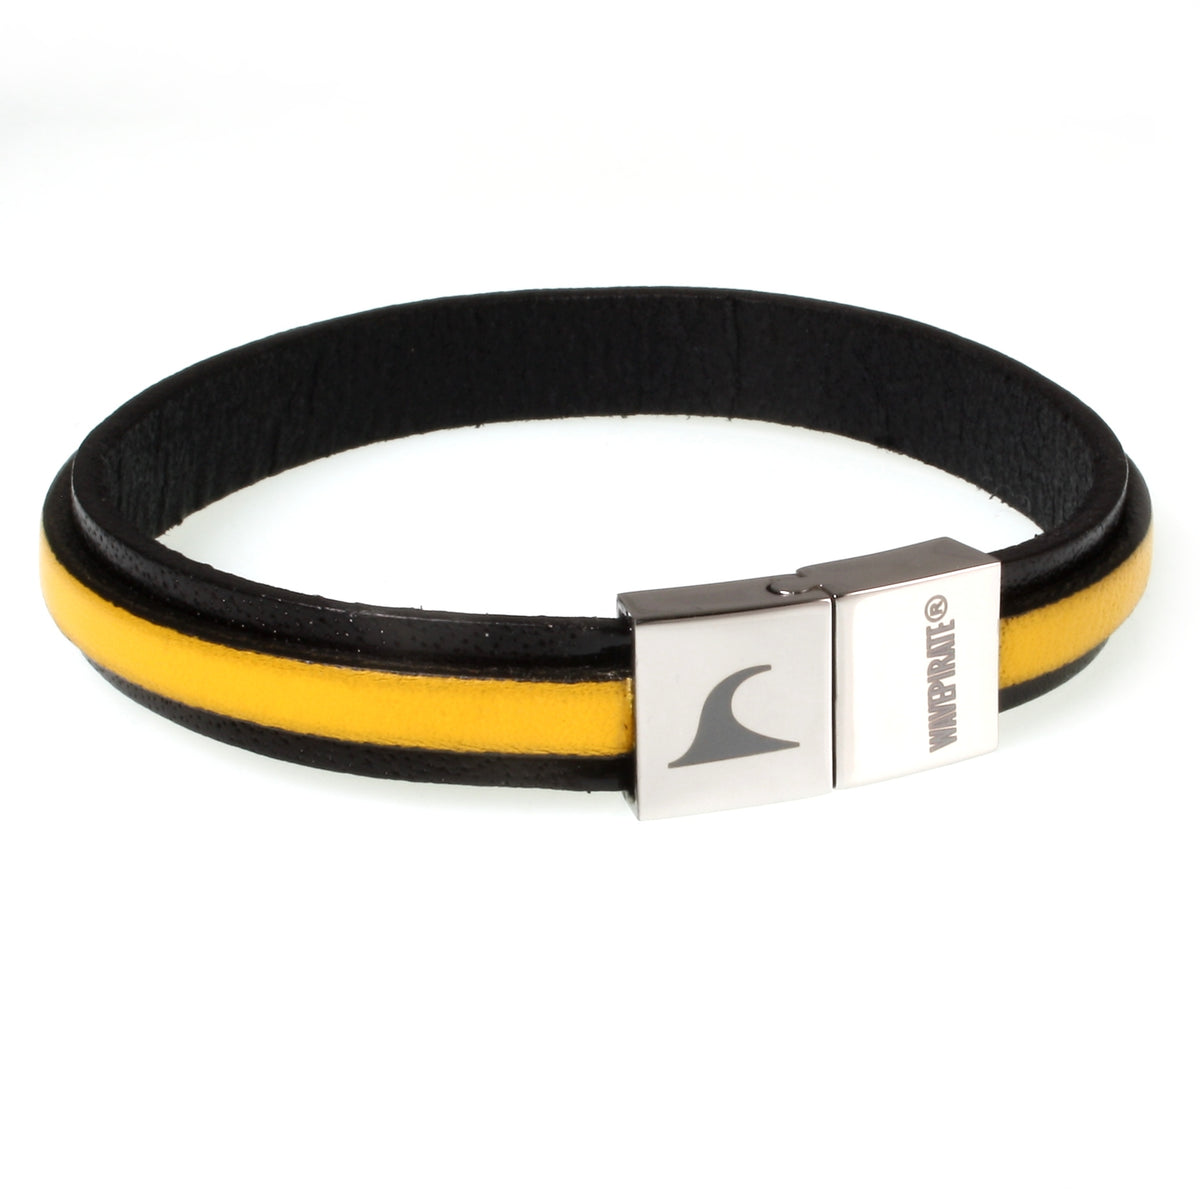 Herren-Leder-Armband-Line-schwarz-gelb-flach-Edelstahlverschluss-vorn-wavepirate-shop